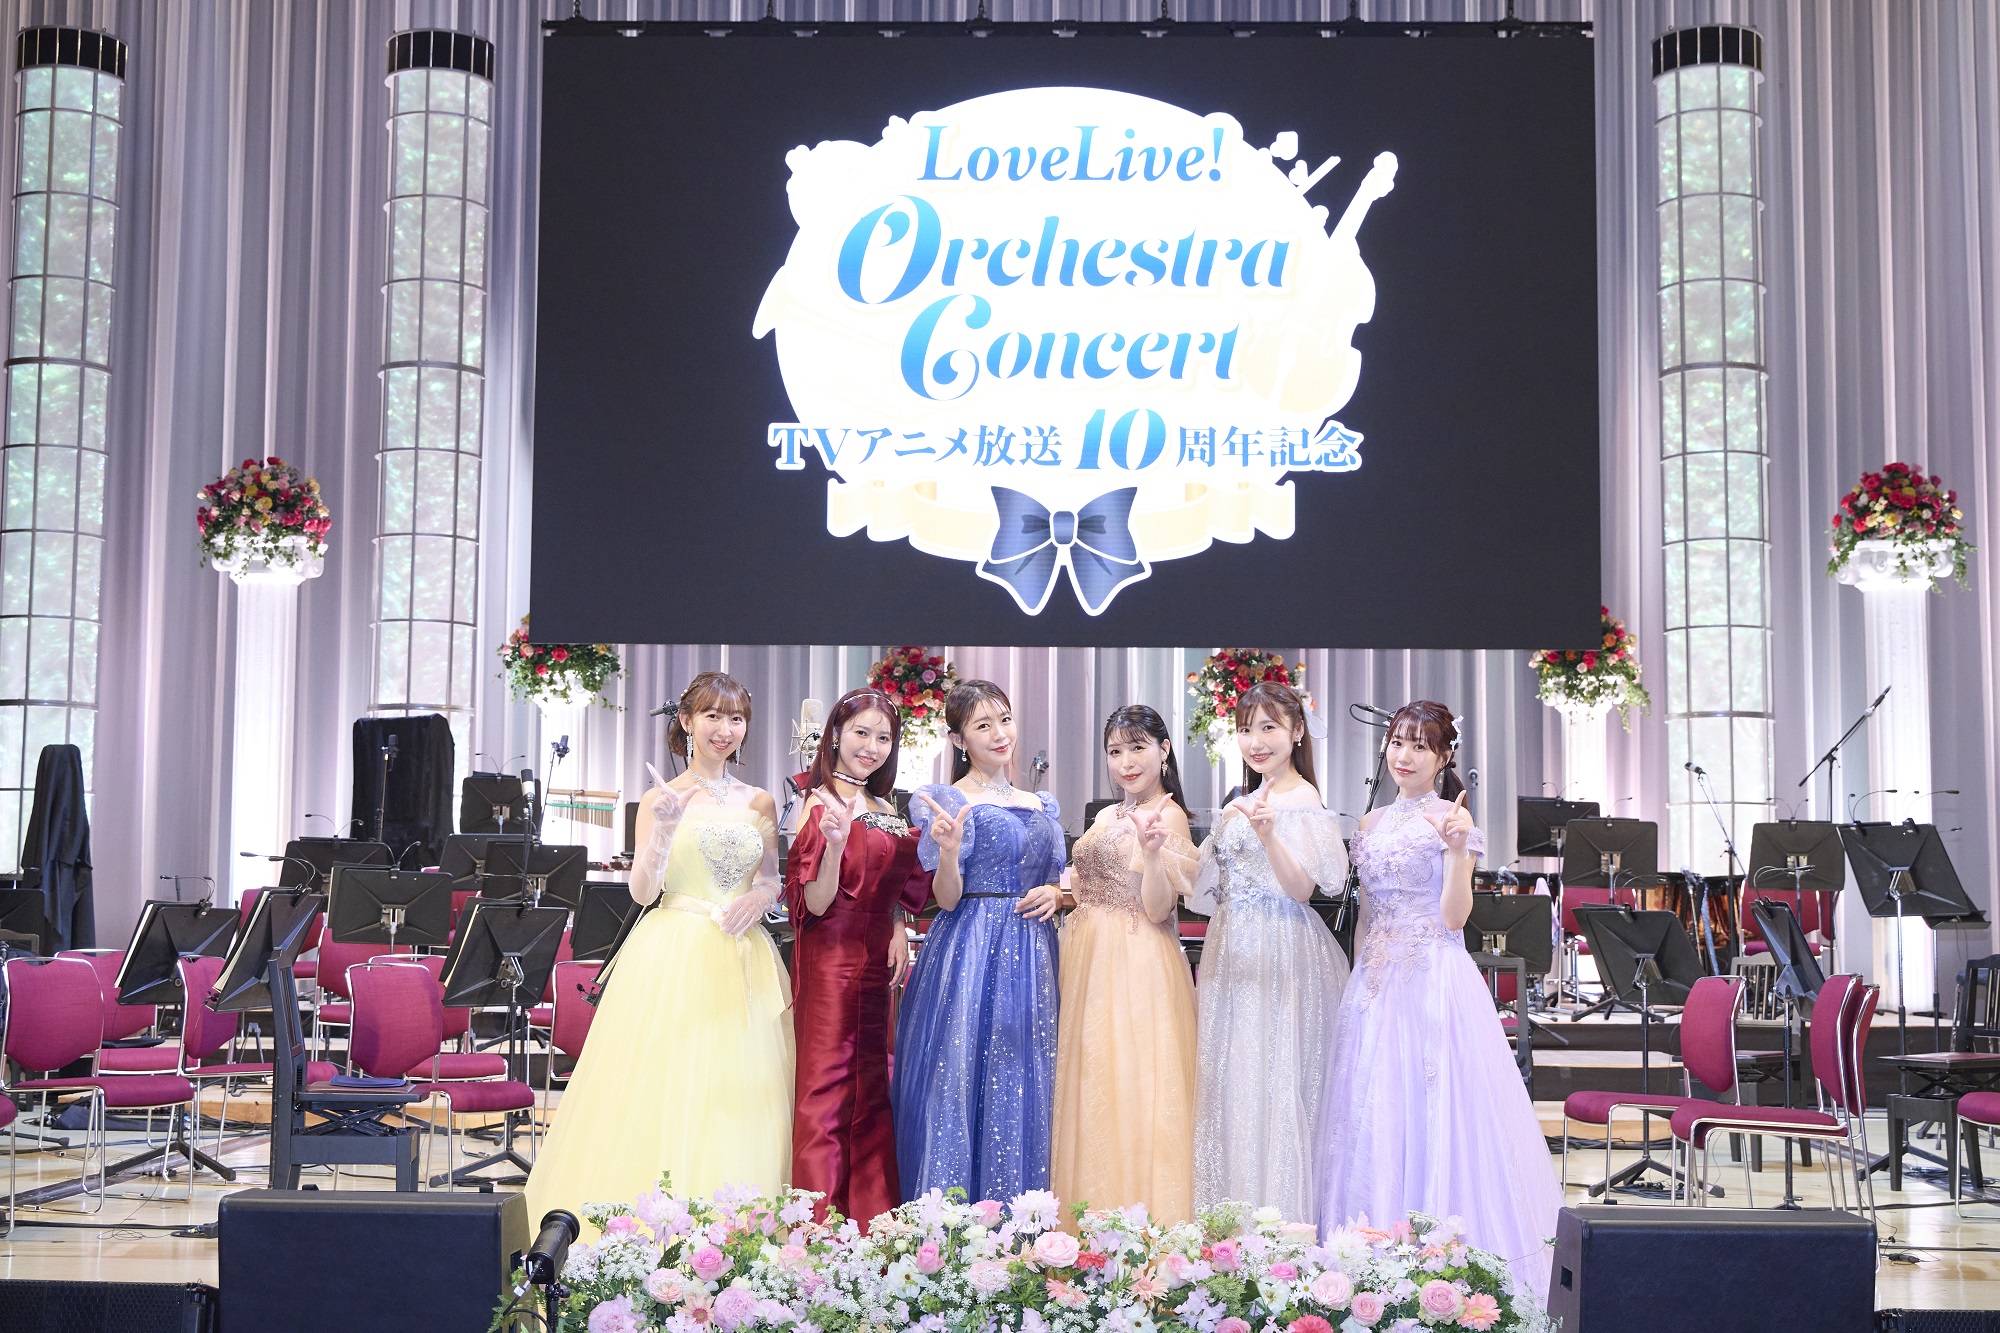 3月30日~31日開催「TVアニメ放送10周年記念 LoveLive! Orchestra Concert」